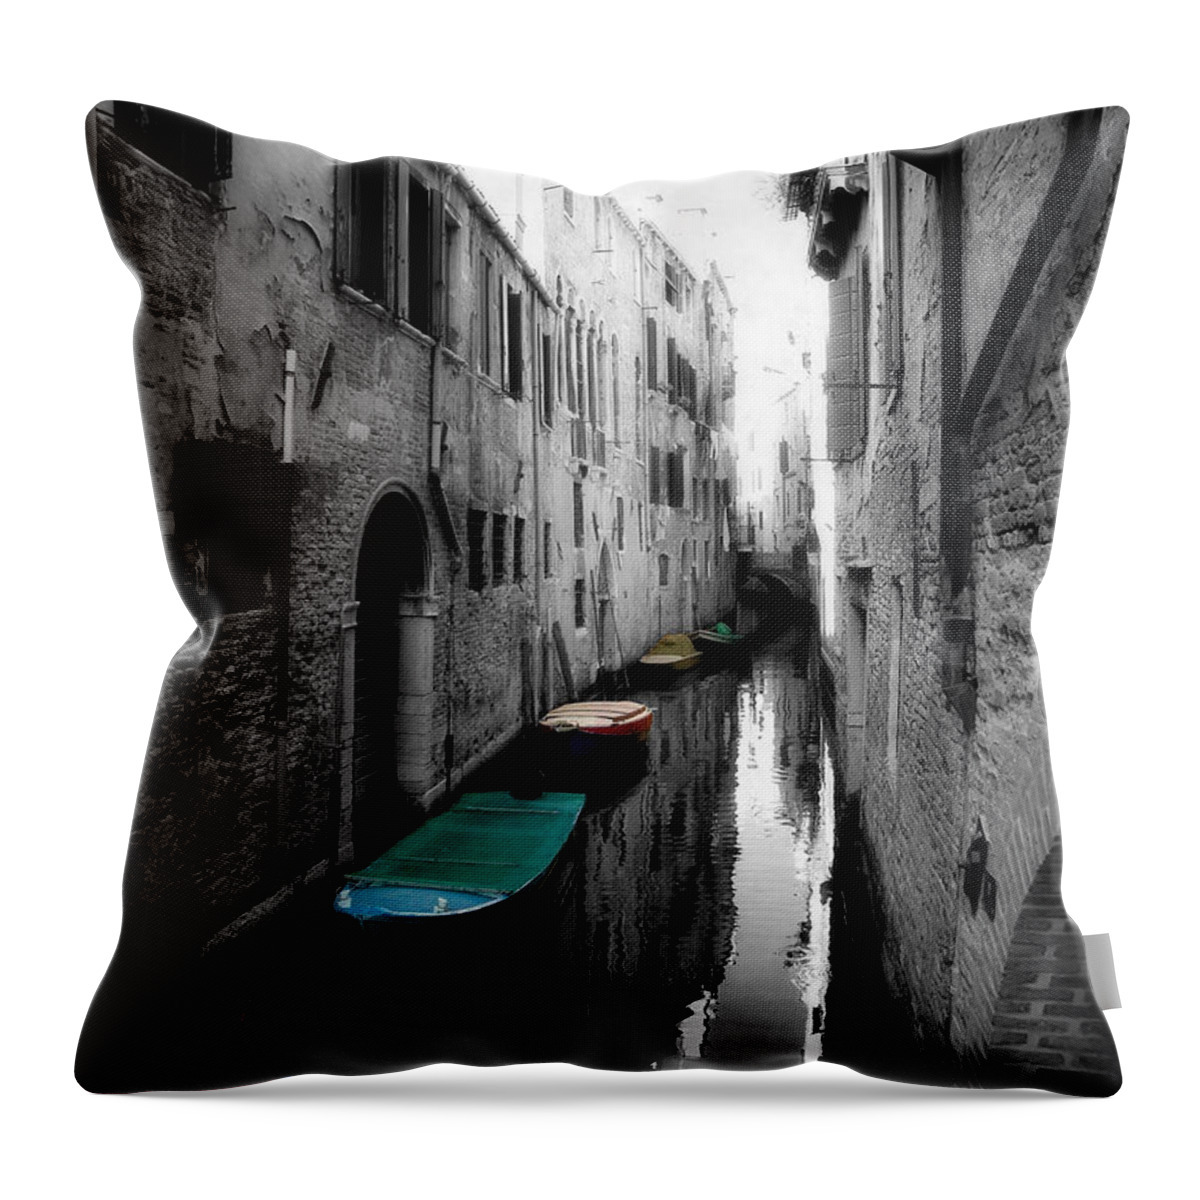 L'aqua Magica Throw Pillow featuring the photograph L'Aqua Magica by Micki Findlay